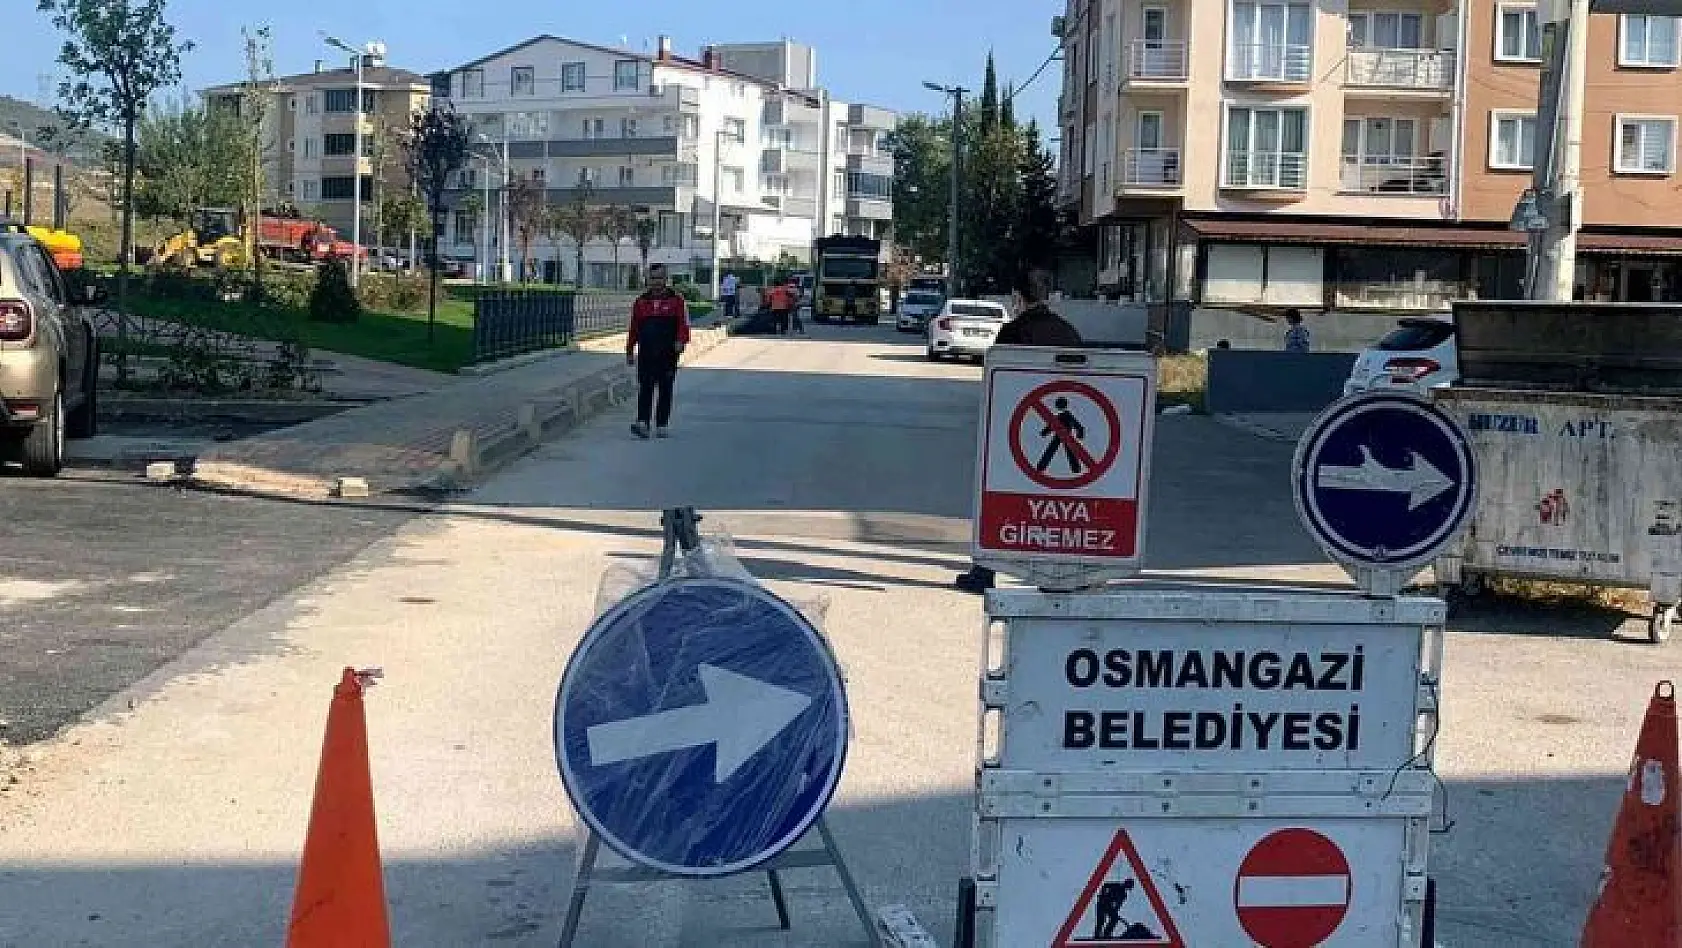 Osmangazi'de bozulan yollar asfaltla yenileniyor